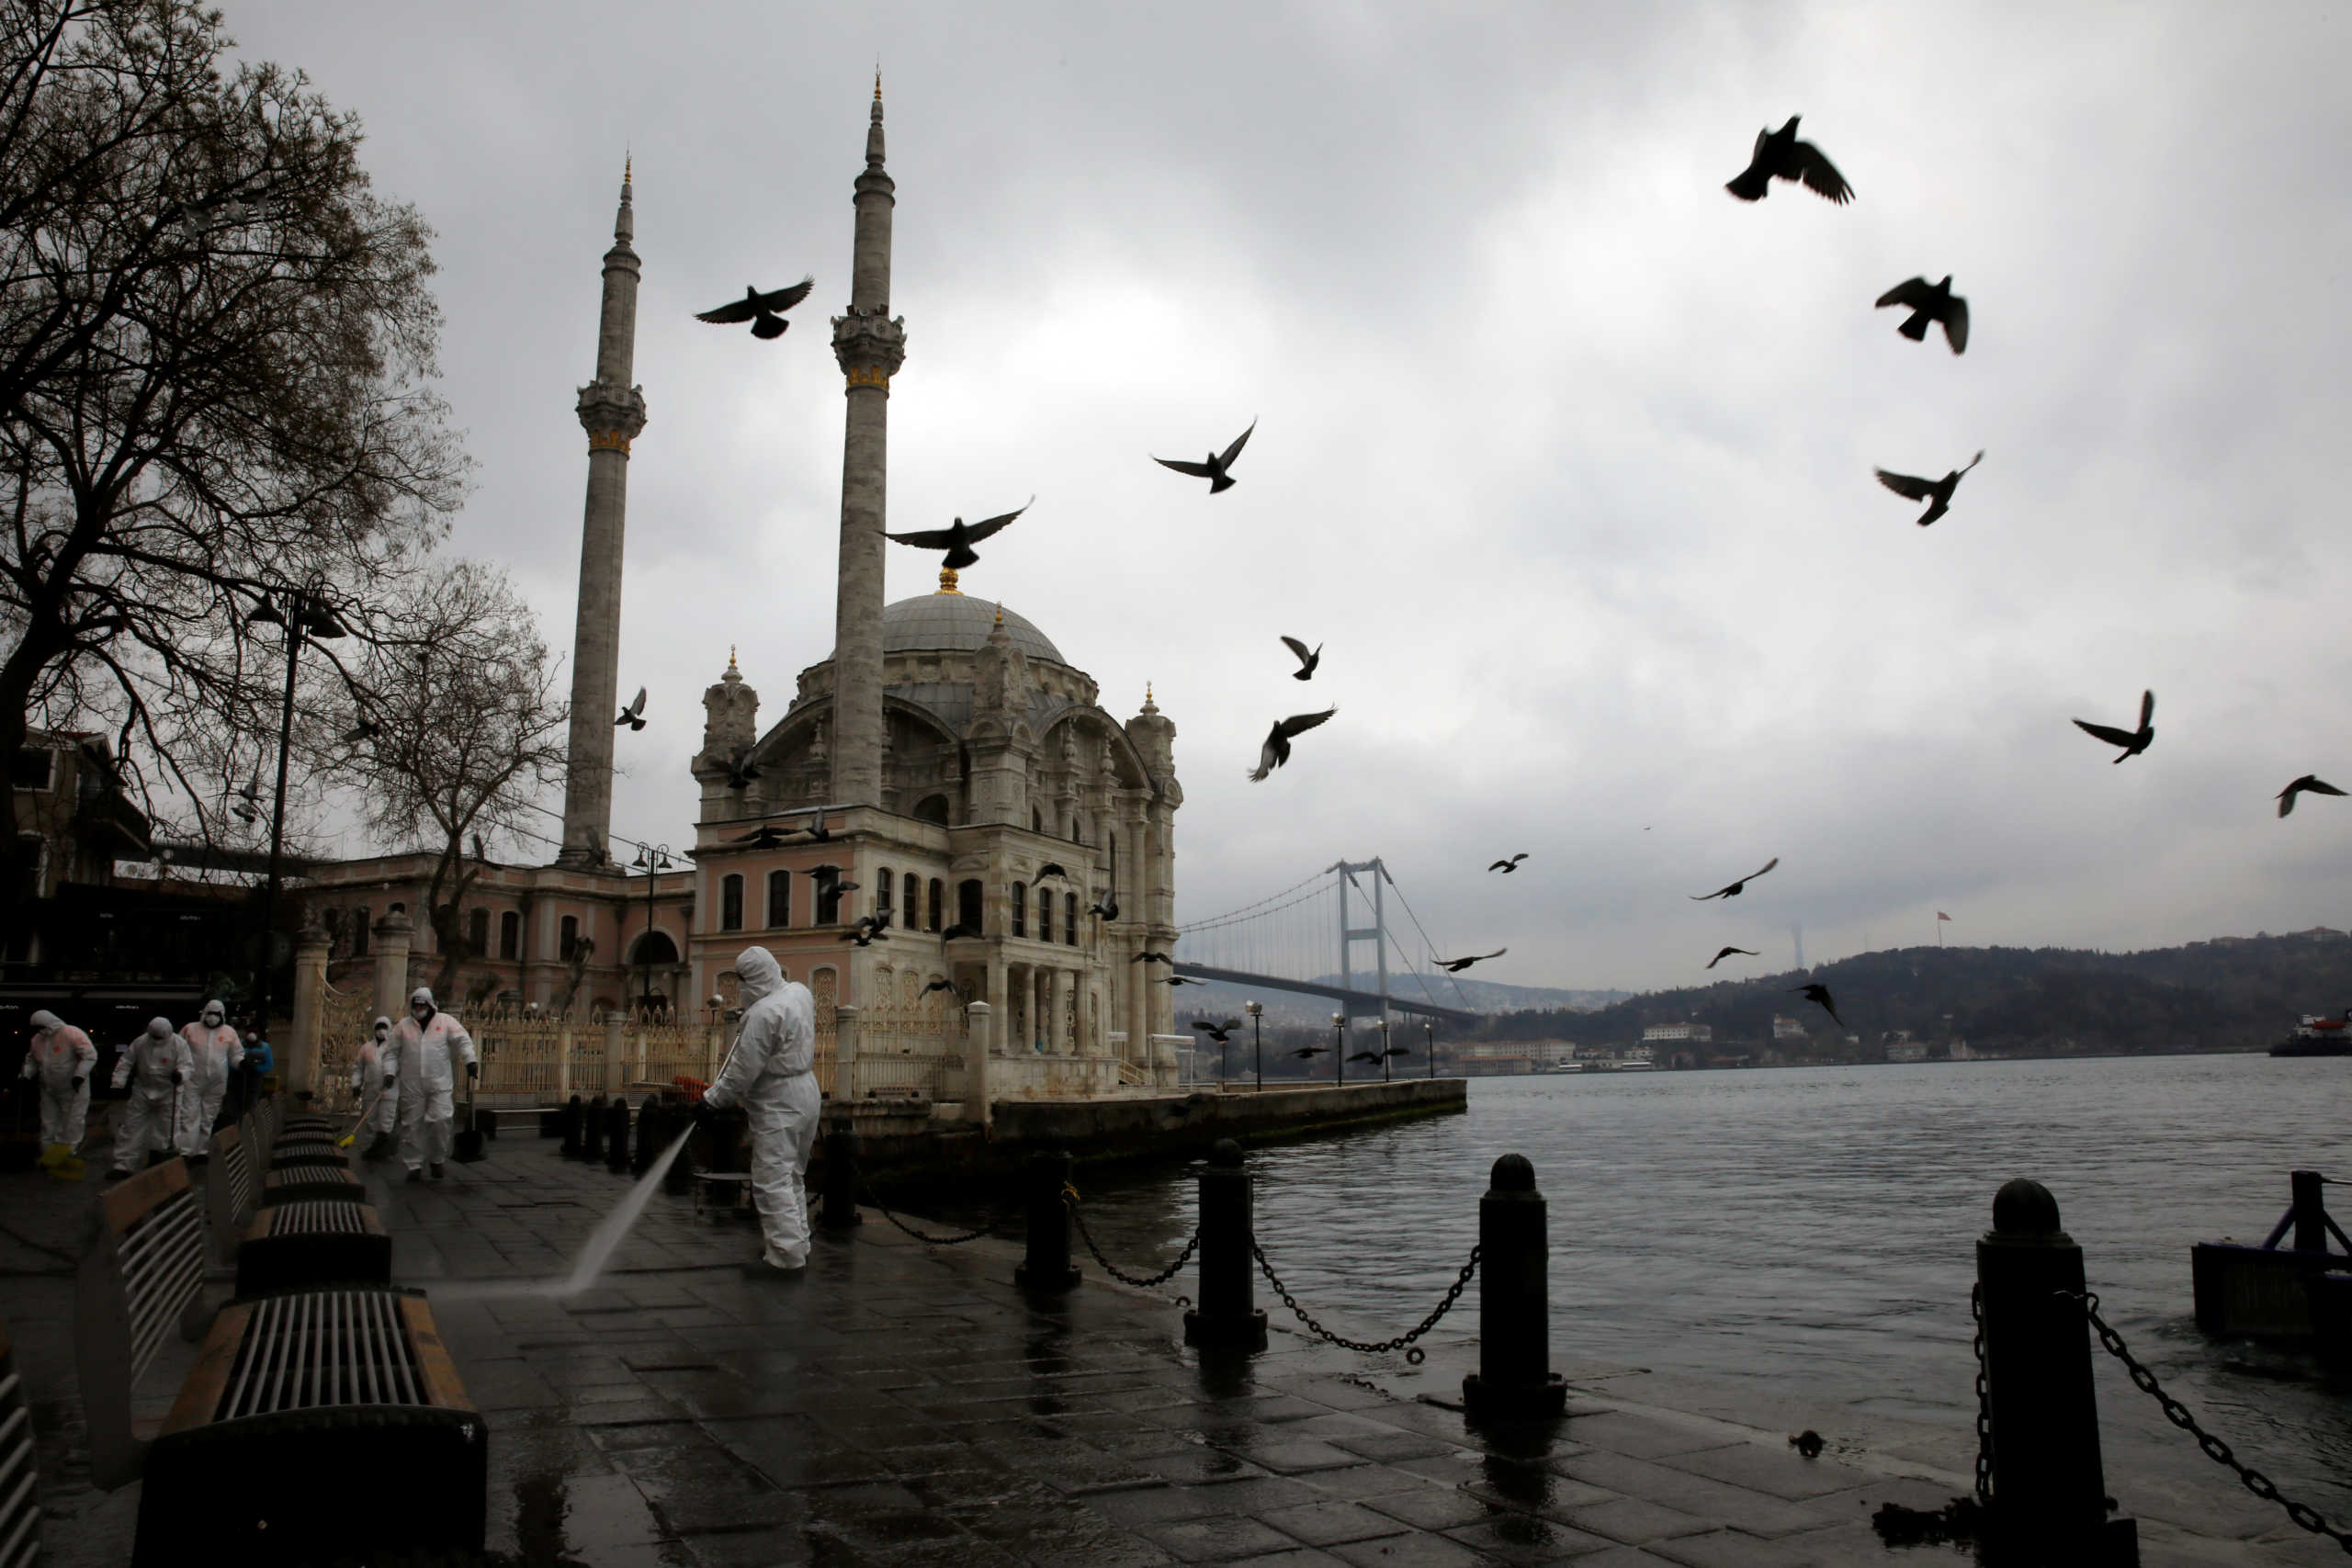 Τουρκία: Νέα μέτρα και περιορισμοί σε συγκοινωνίες και καταστήματα! 37 οι νεκροί